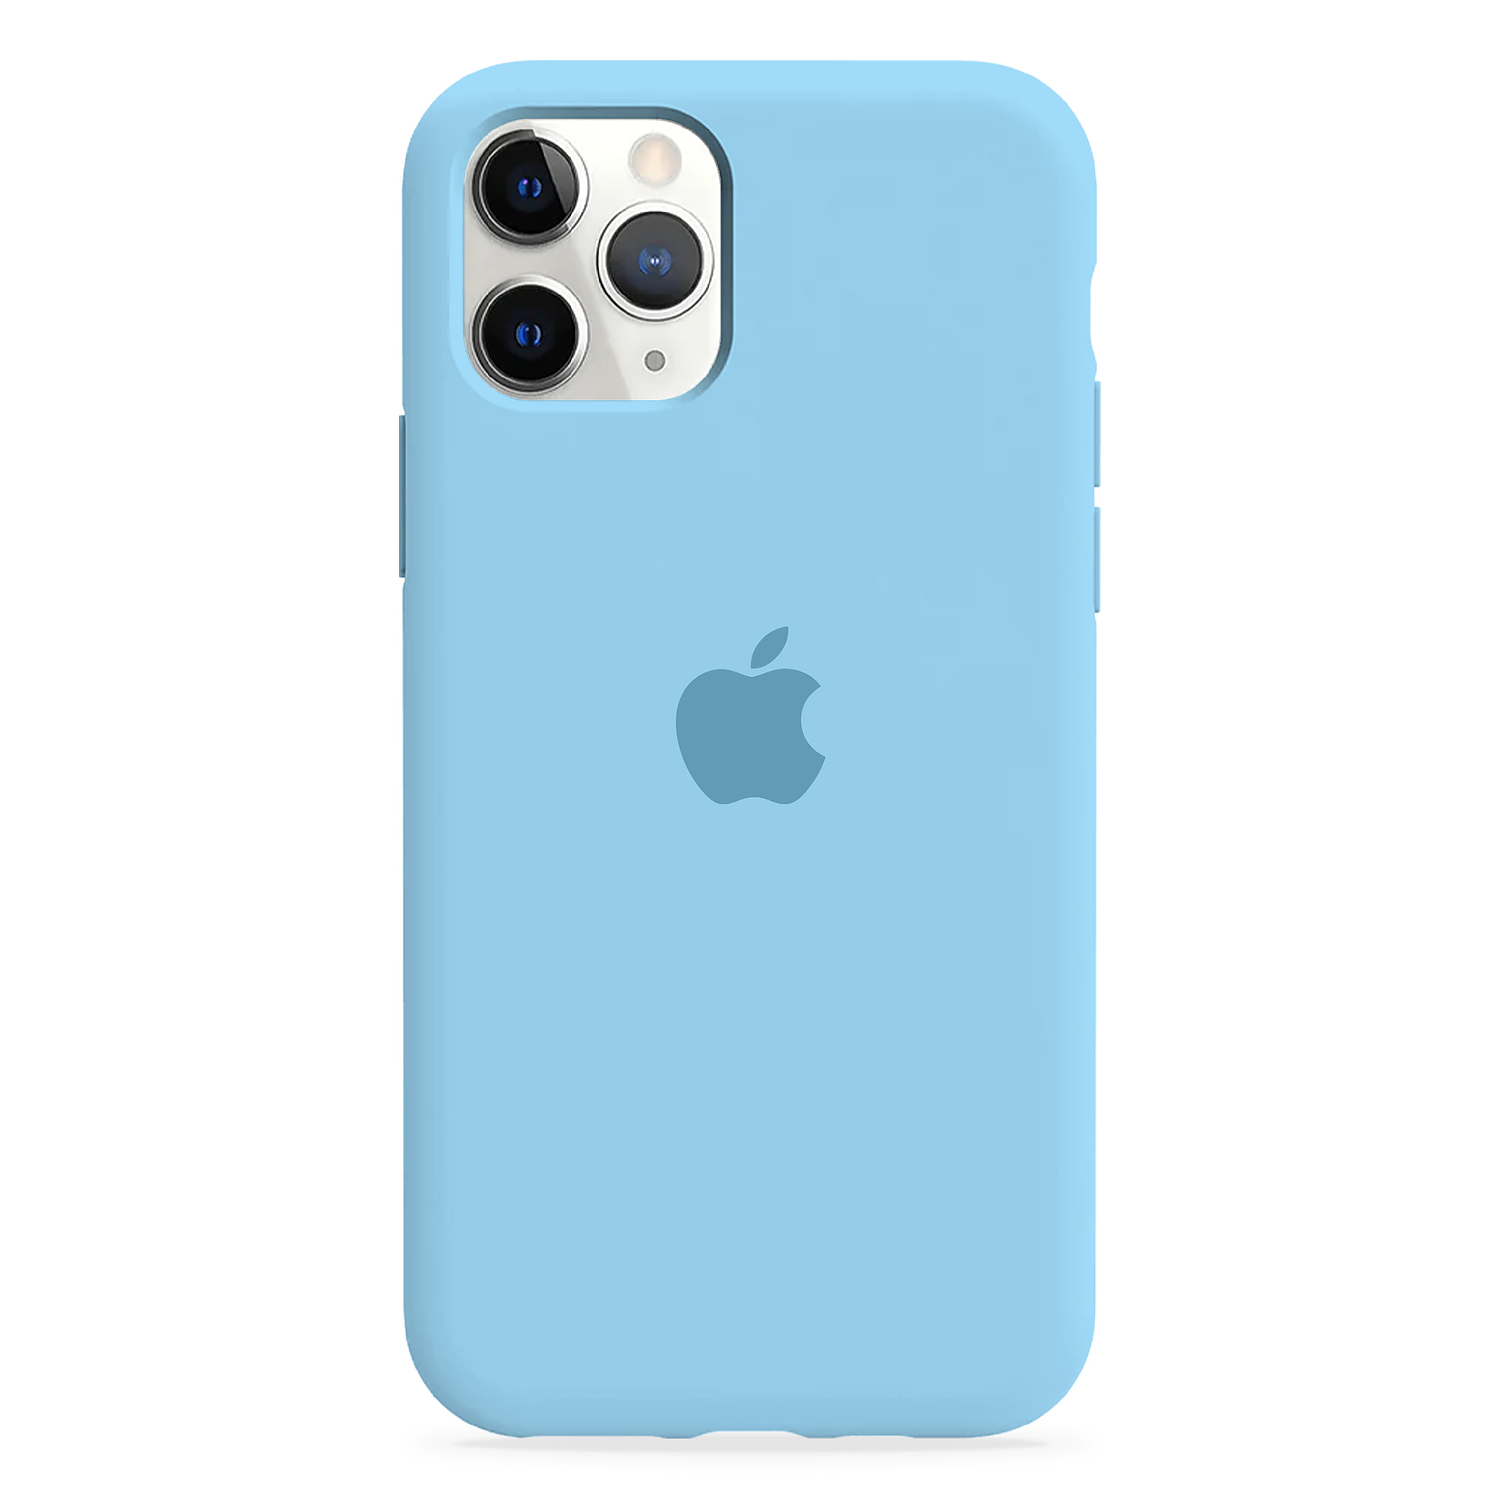 Carcasa de Silicona - iPhone 11 Pro Max 5